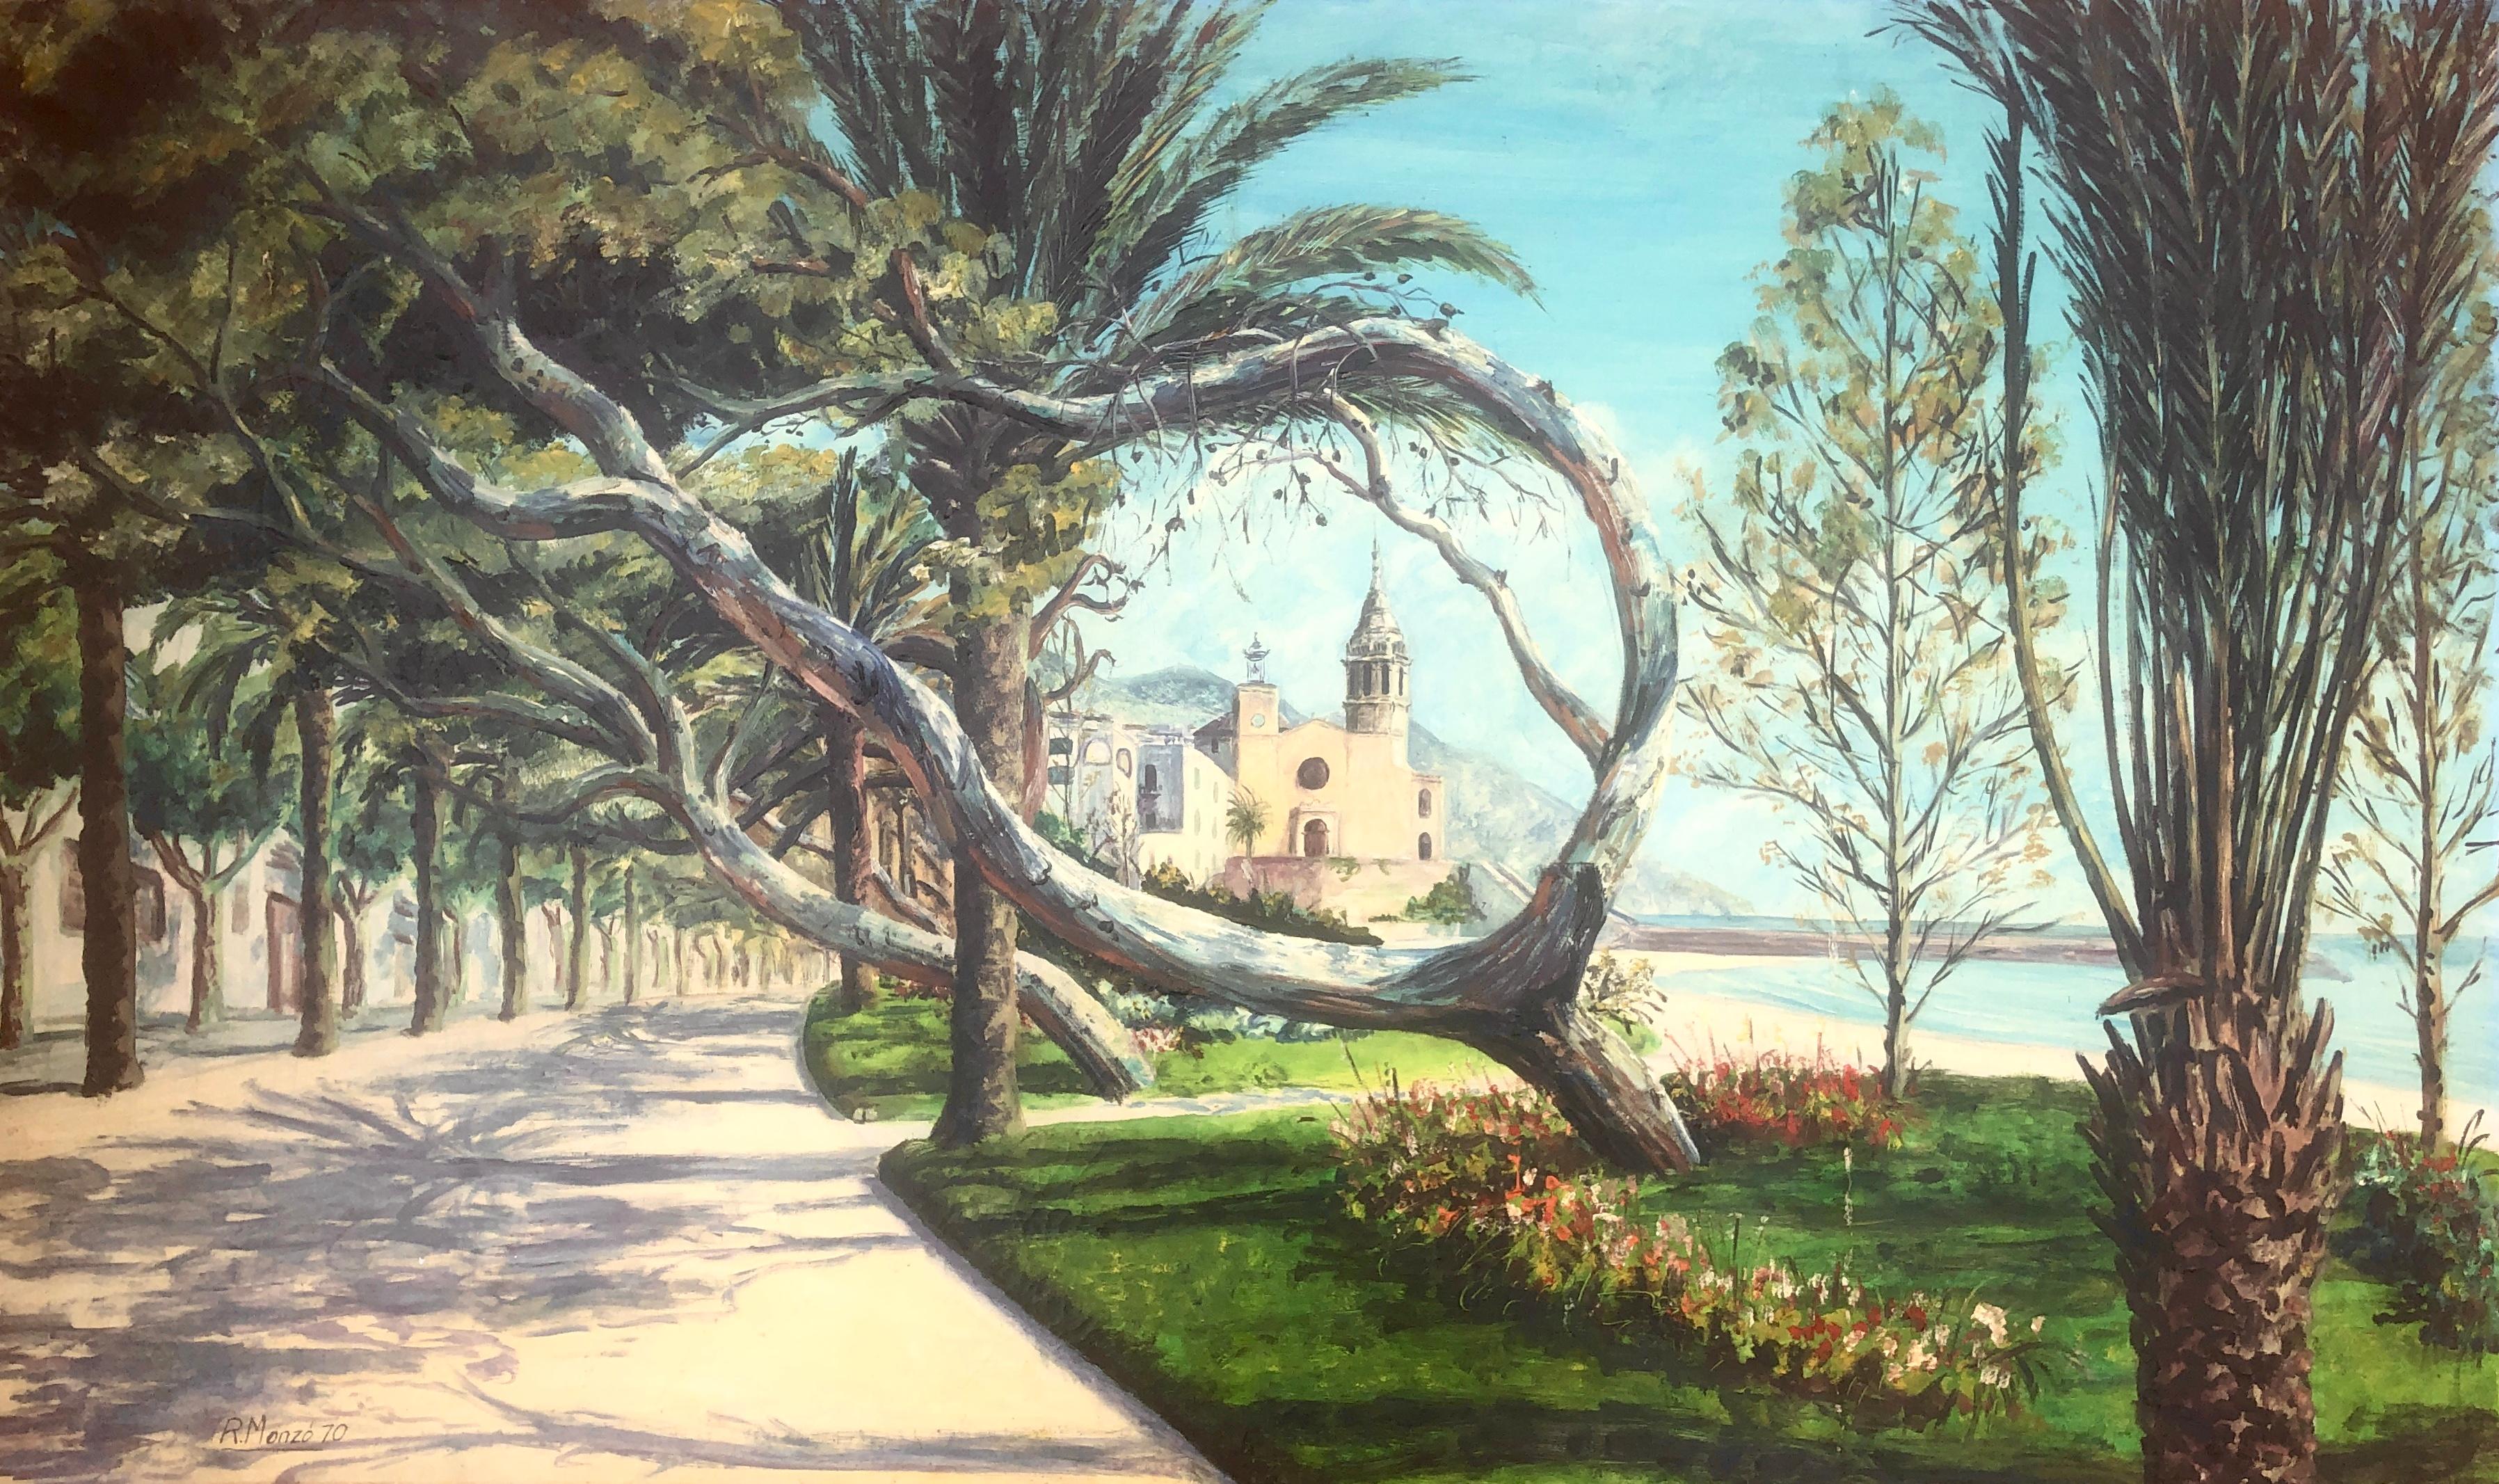 Landscape Painting Rafael Monzo - Sitges Espagne huile sur toile paysage marin méditerranéen paysage urbain